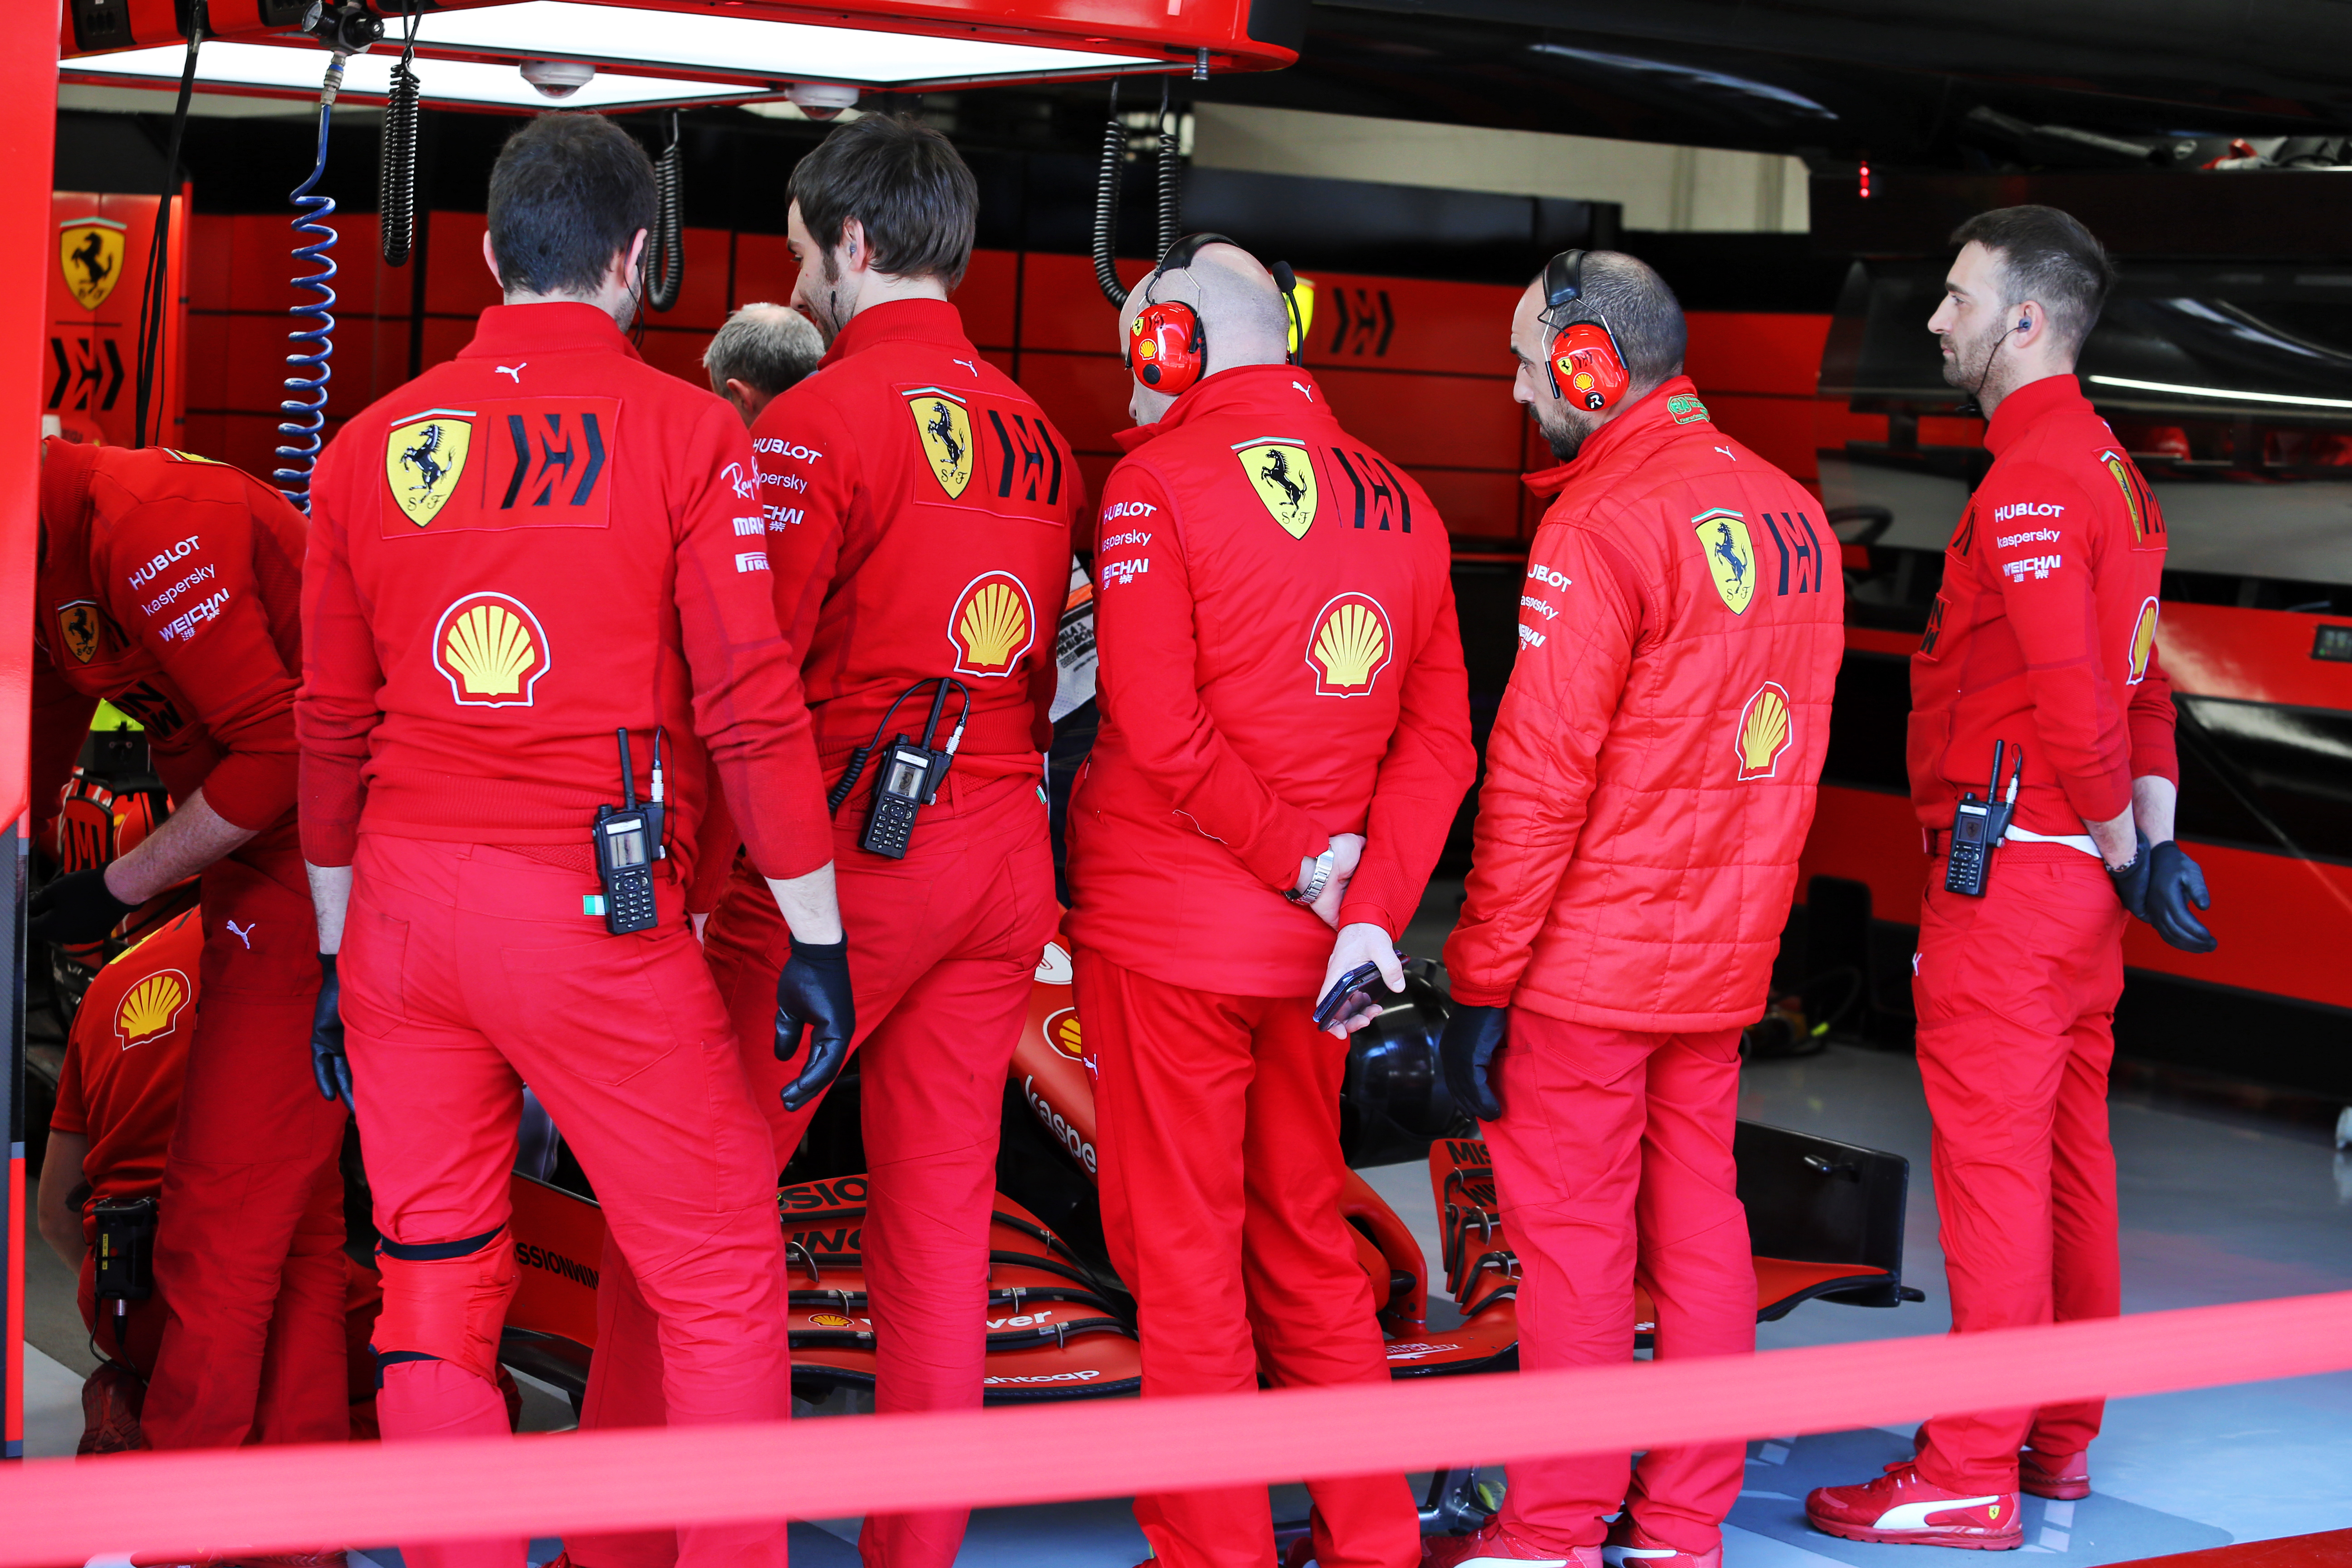 Ferrari mechanics F1 2020 testing Barcelona garage